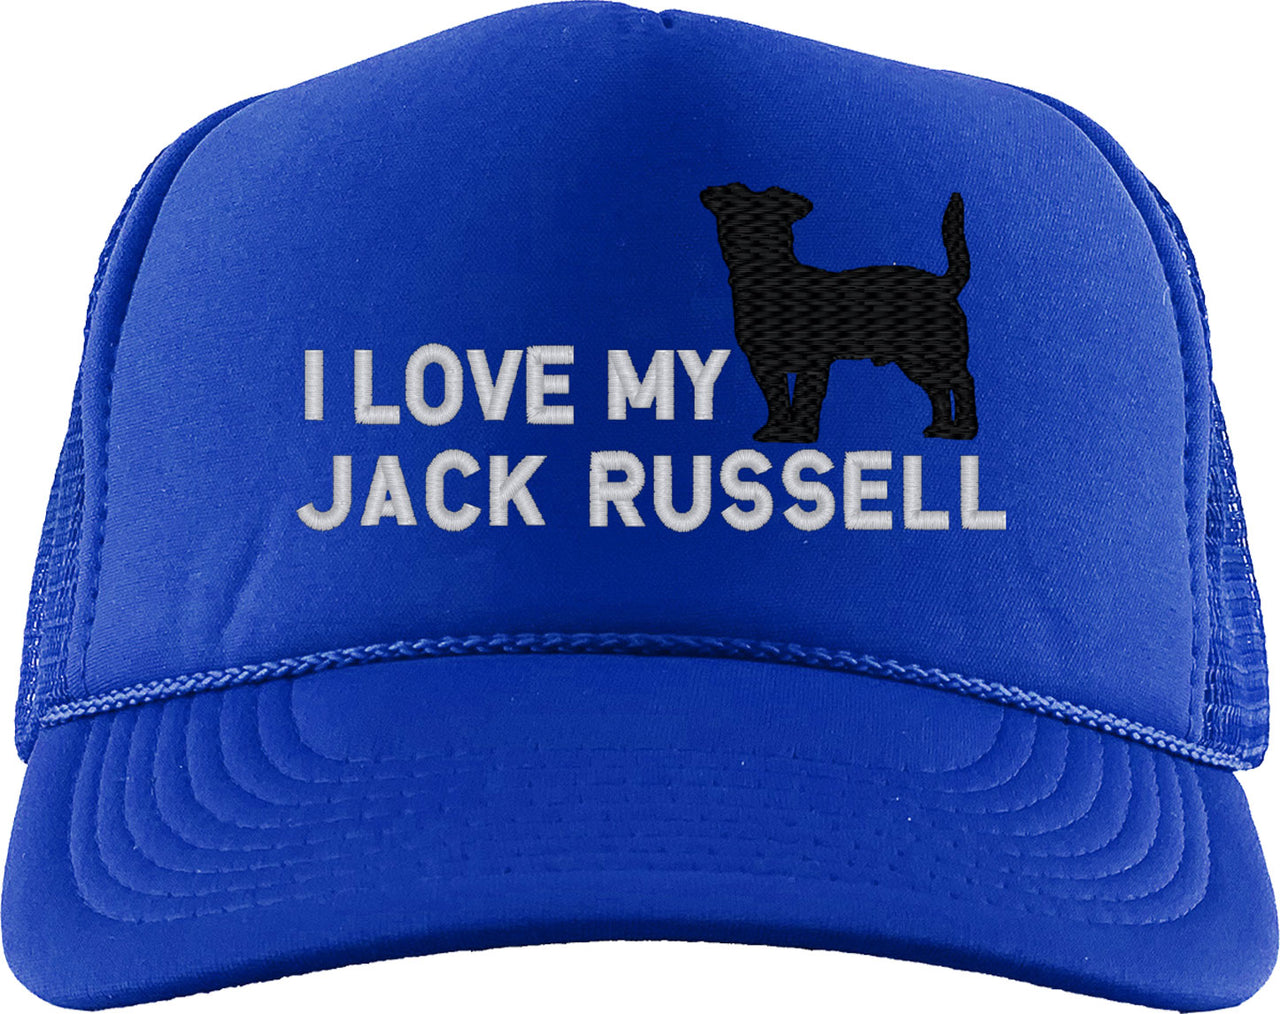 I Love My Jack Russell Dog Foam Trucker Hat